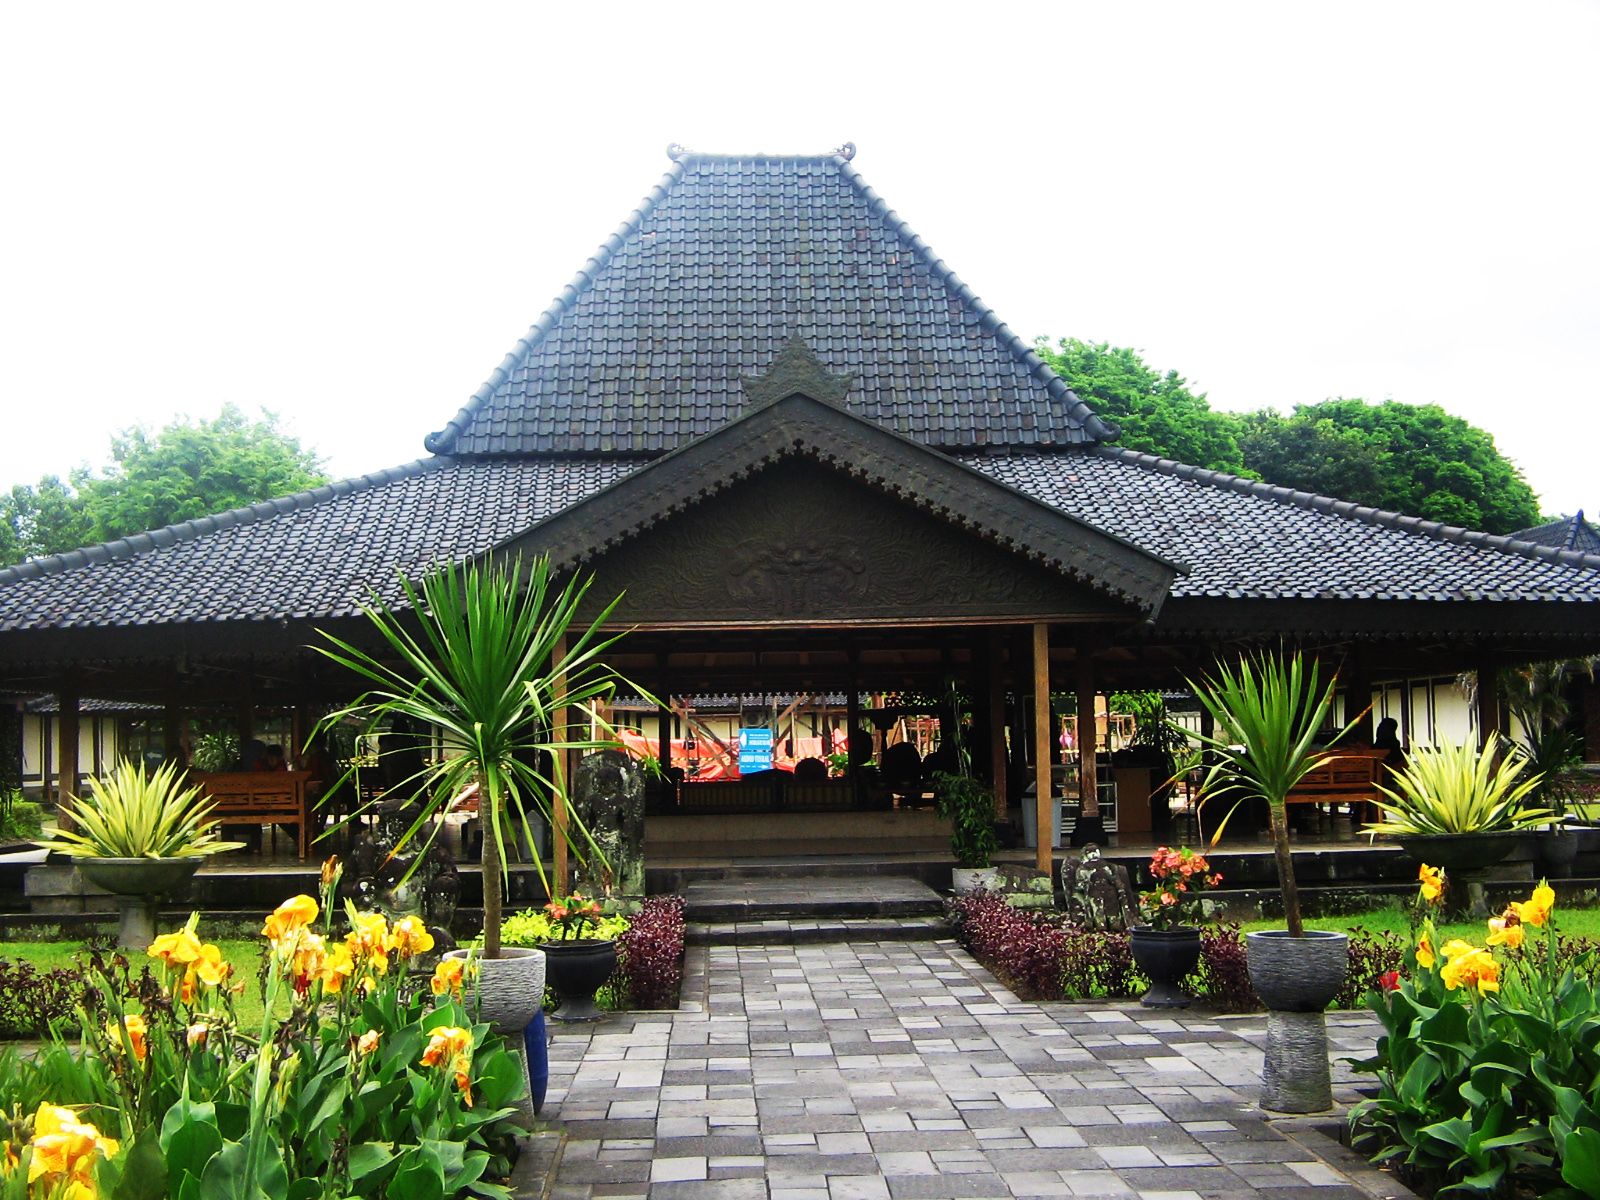 Rumah Joglo Rumah Adat Khas Jawa Tengah - rekreartive